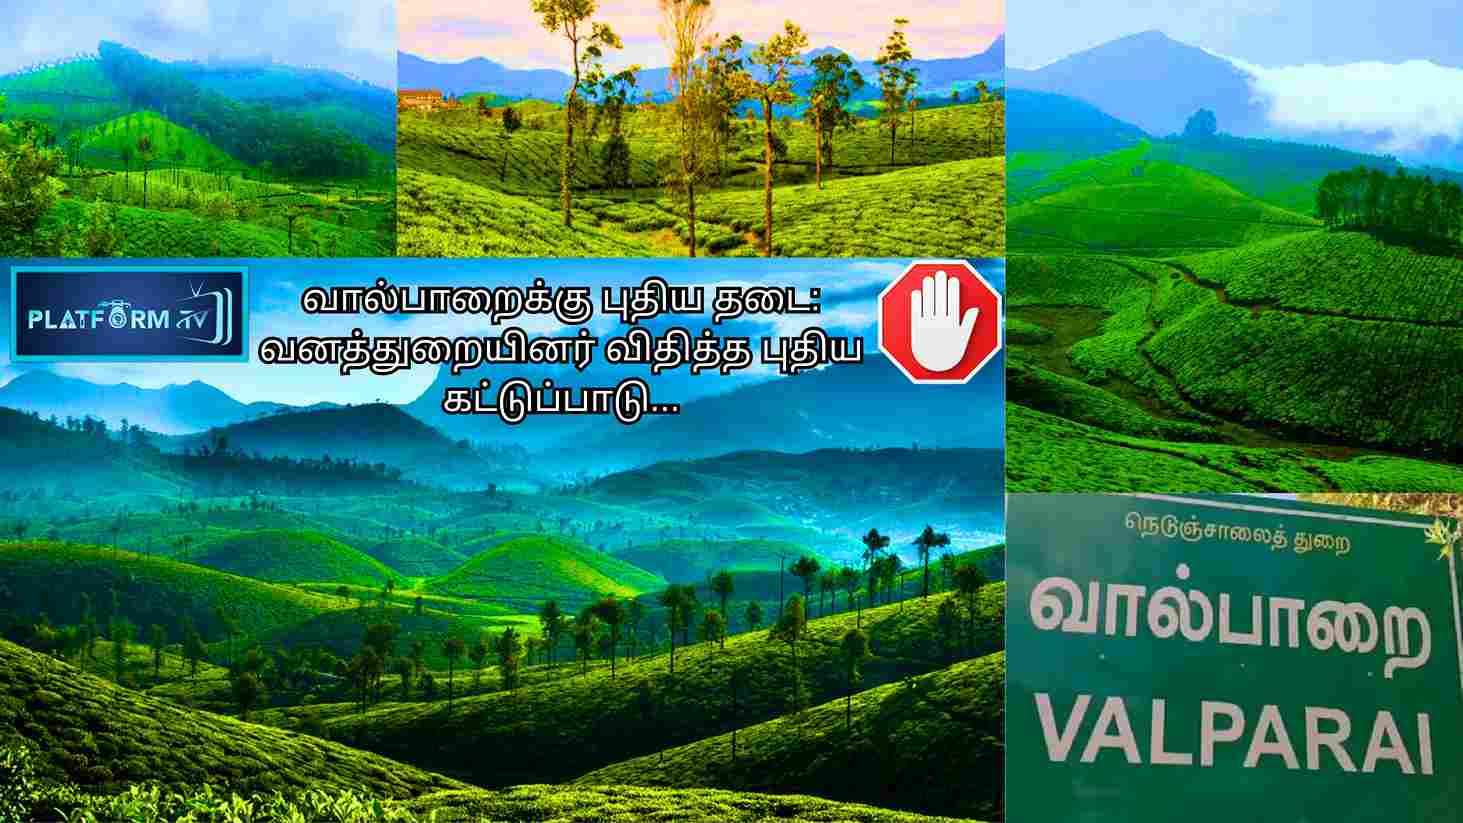 Valparai - Platform Tamil